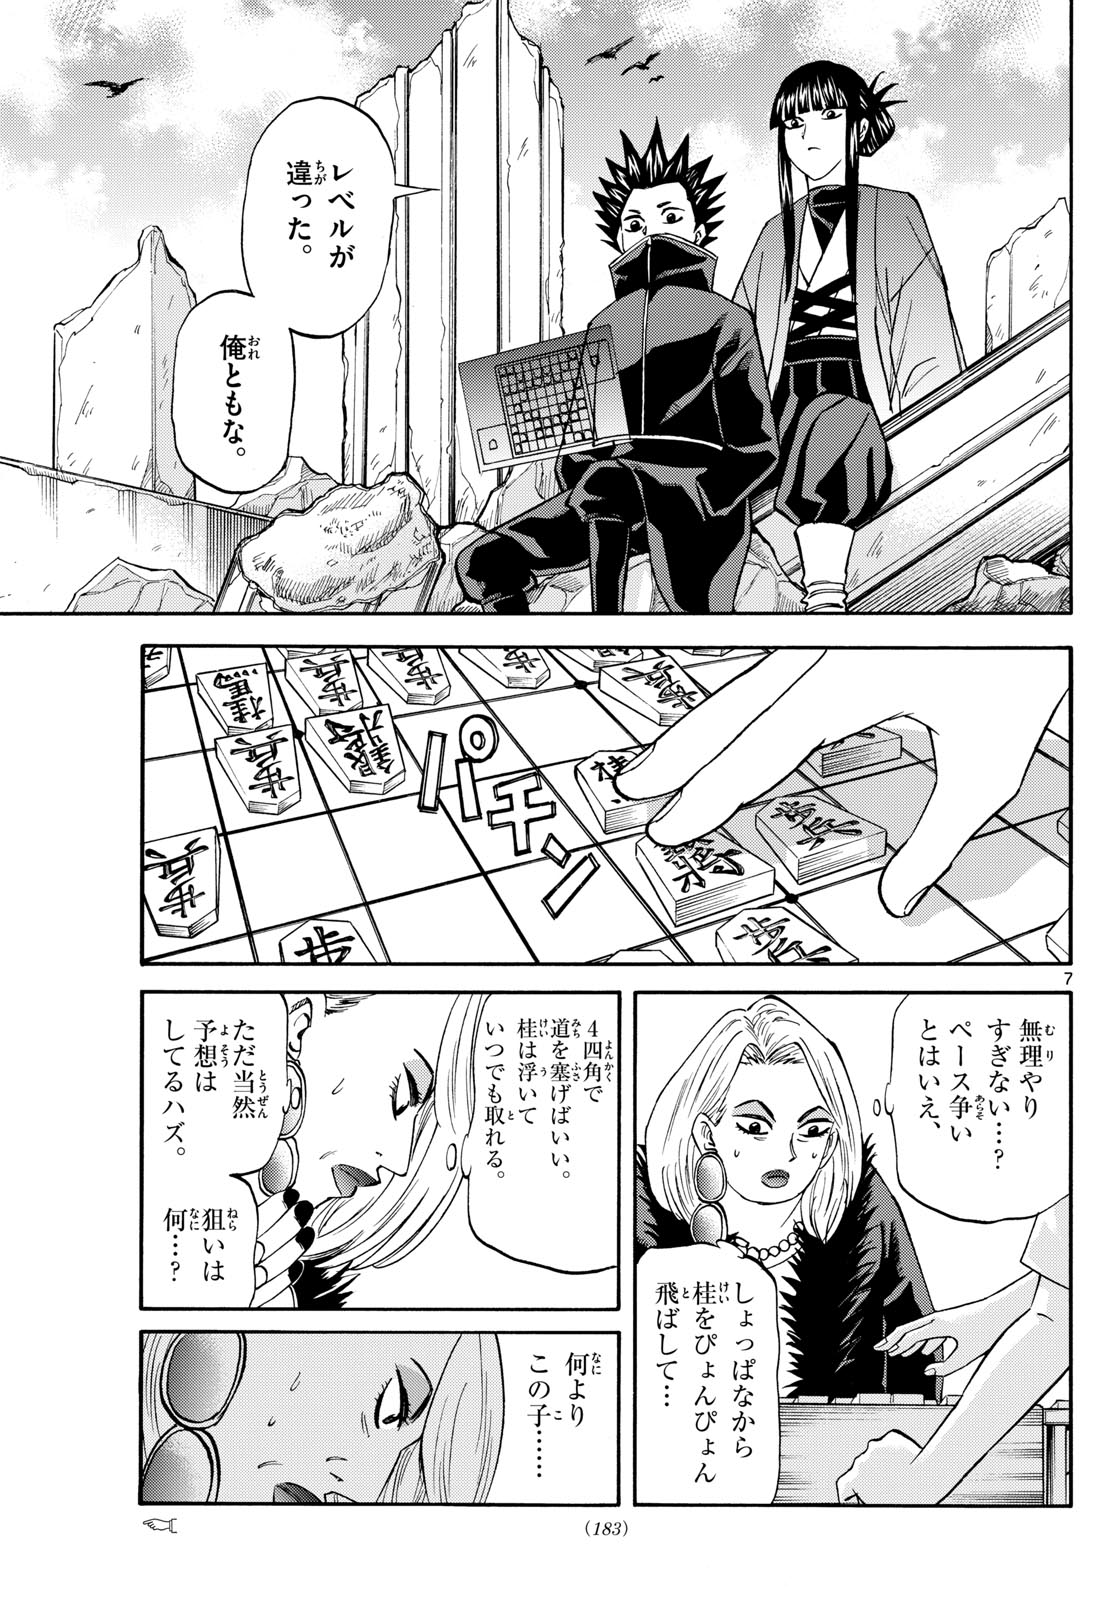 Tatsu to Ichigo - Chapter 192 - Page 7